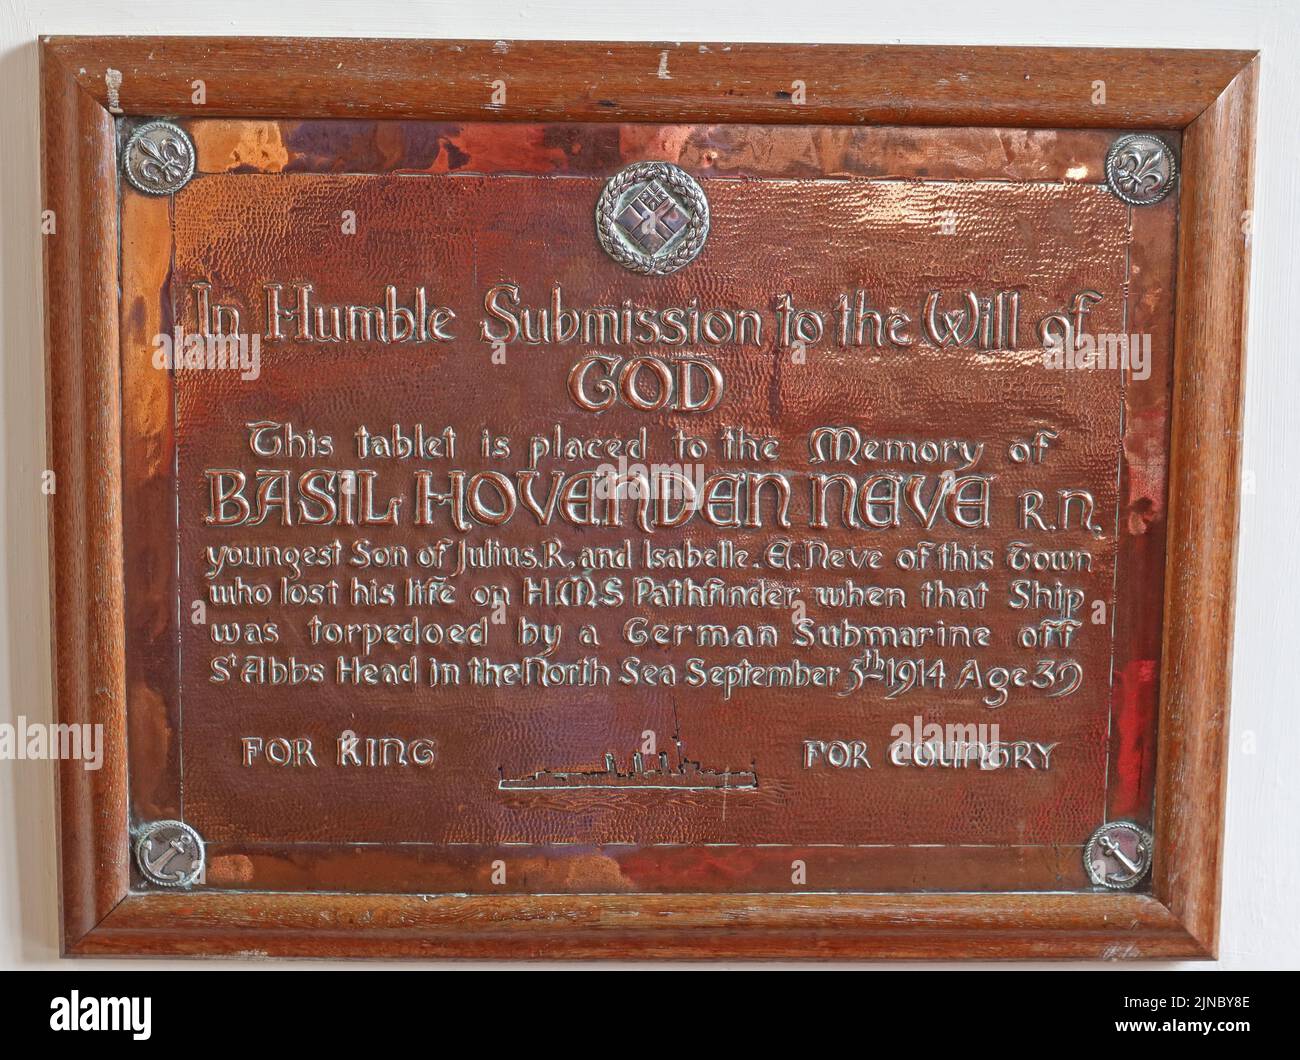 Cuivre Basil Hovandan plaque Nava, à l'église de la laine St James, Chipping Campden, Cotswolds, Oxfordshire, Angleterre, Royaume-Uni, GL55 6AA Banque D'Images